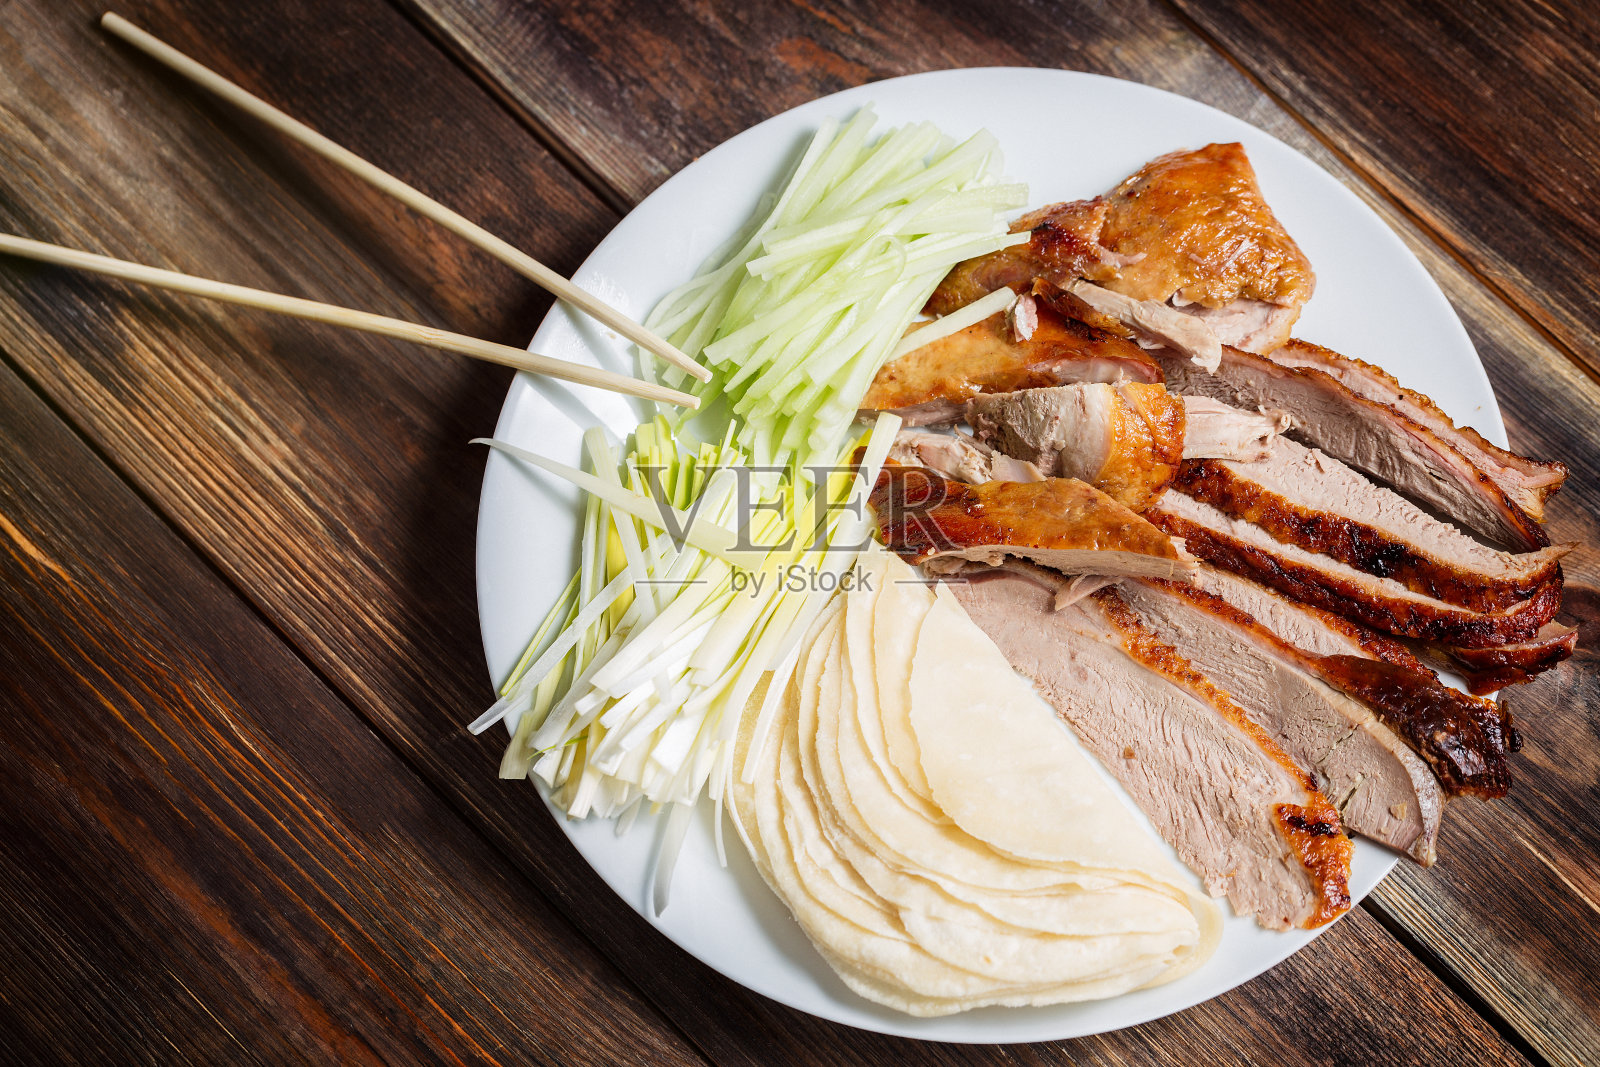 北京烤鸭——中国烤鸭配黄瓜片，洋葱，煎饼放在白色盘子里。木制桌子和俯视图照片摄影图片